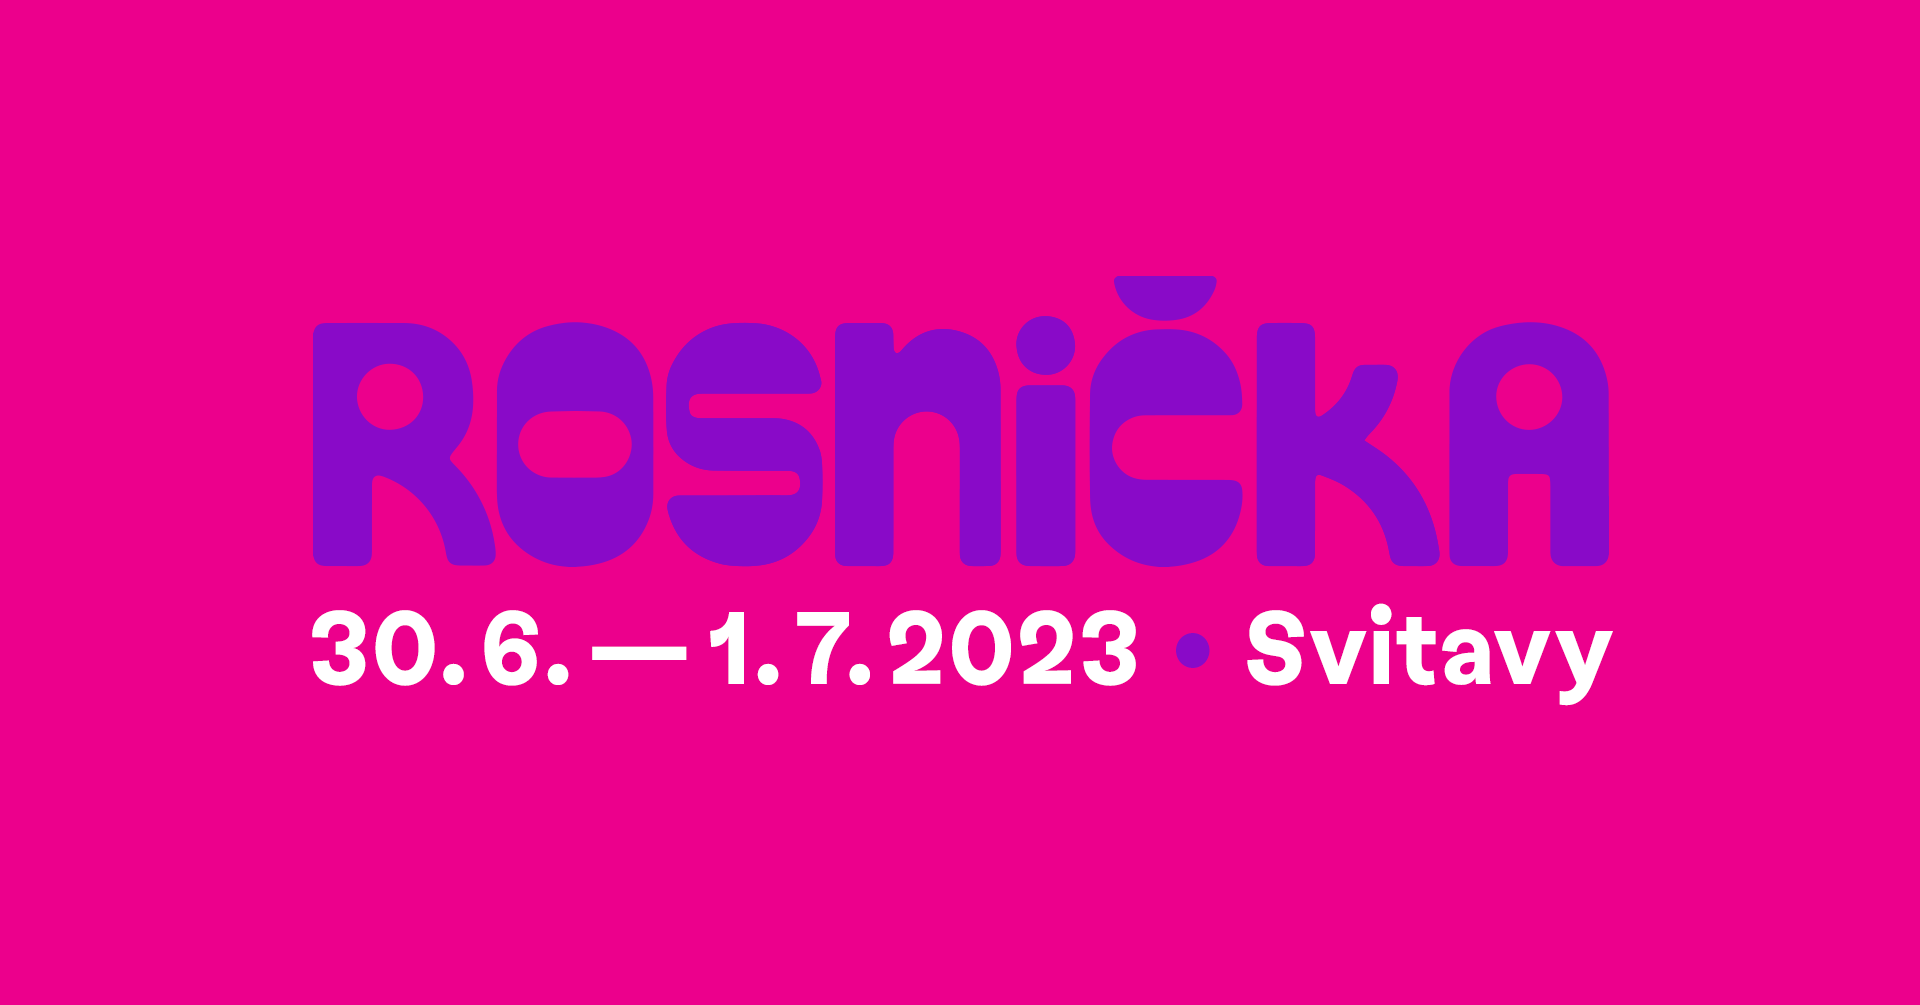 Festival Rosnicka 2023 - フライヤー表